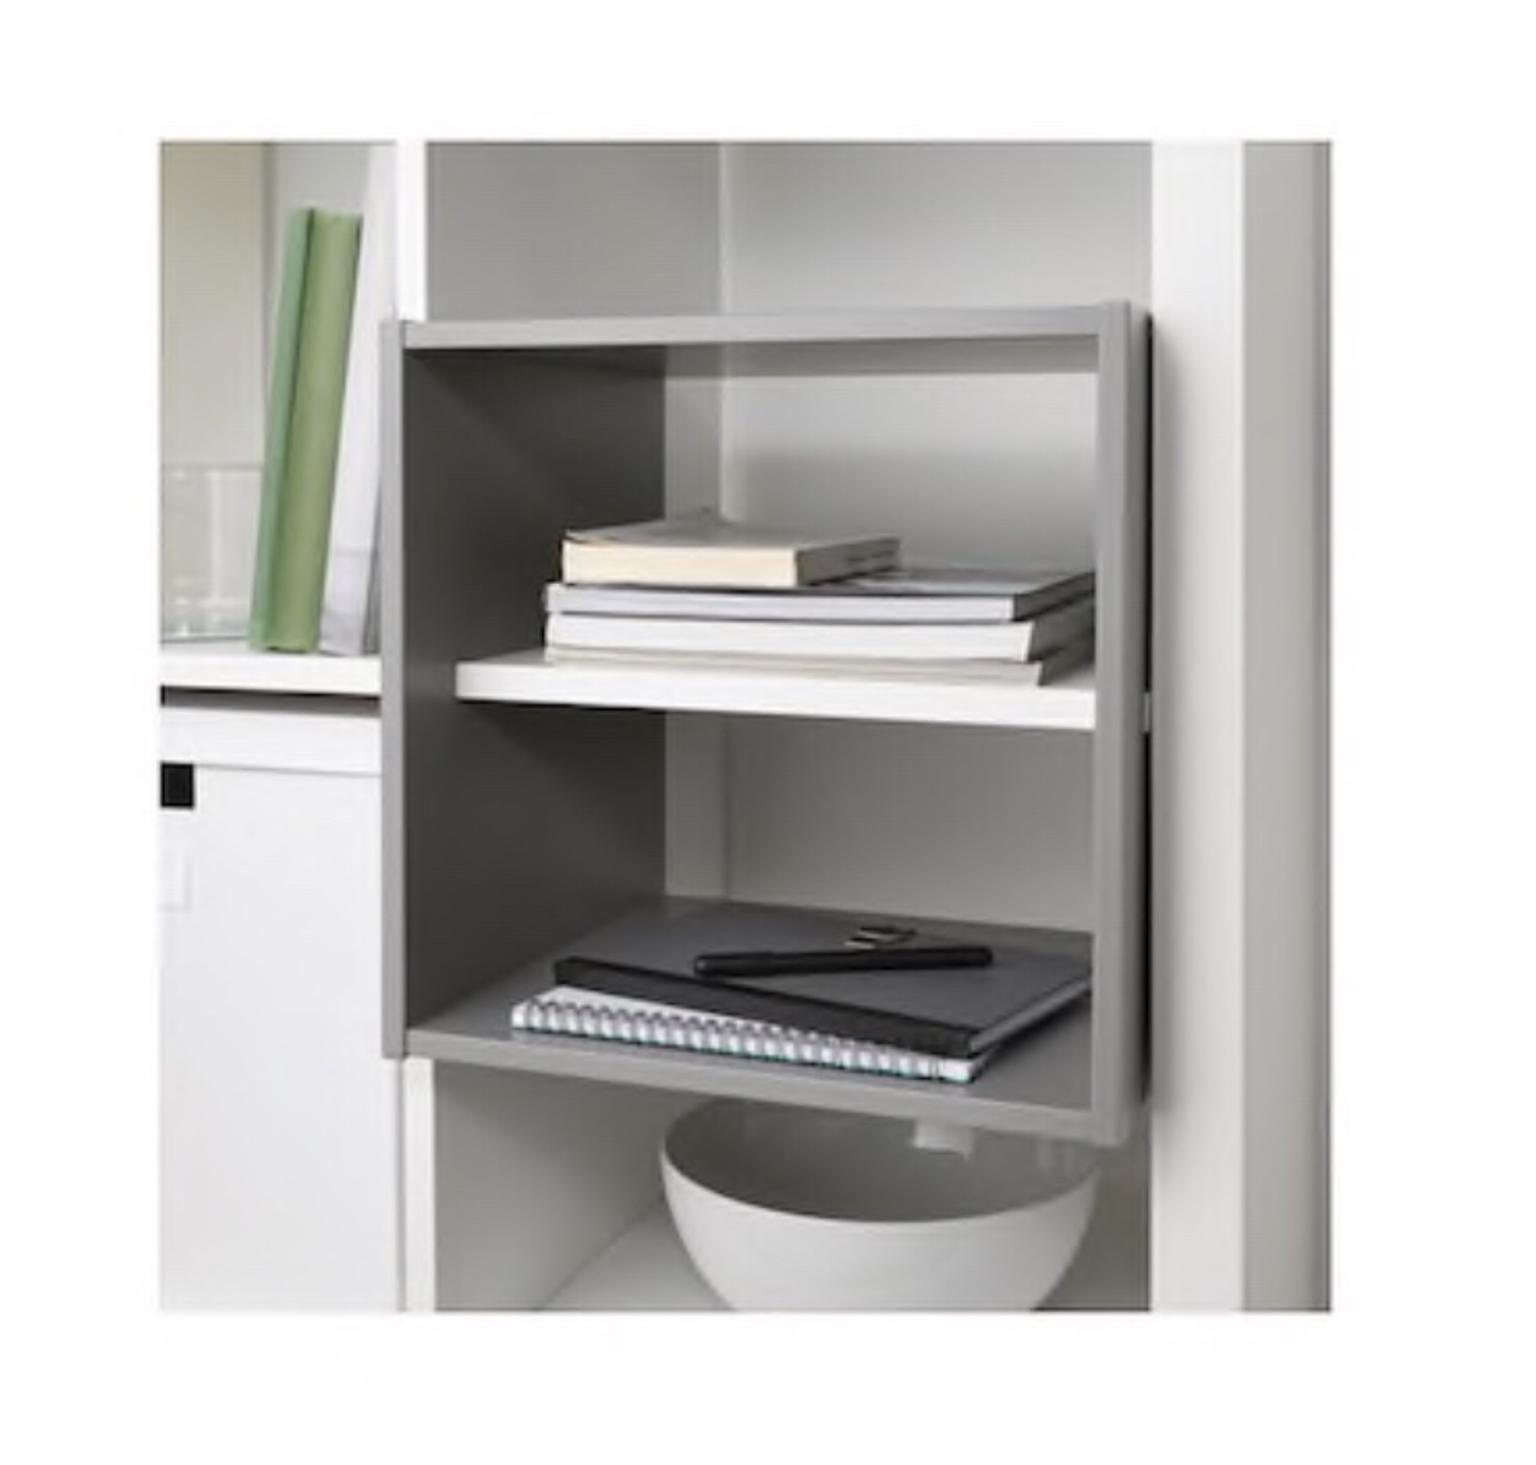 Ikea Kallax Shelf Divider Insert In Ub10 Hillingdon Fur 6 00